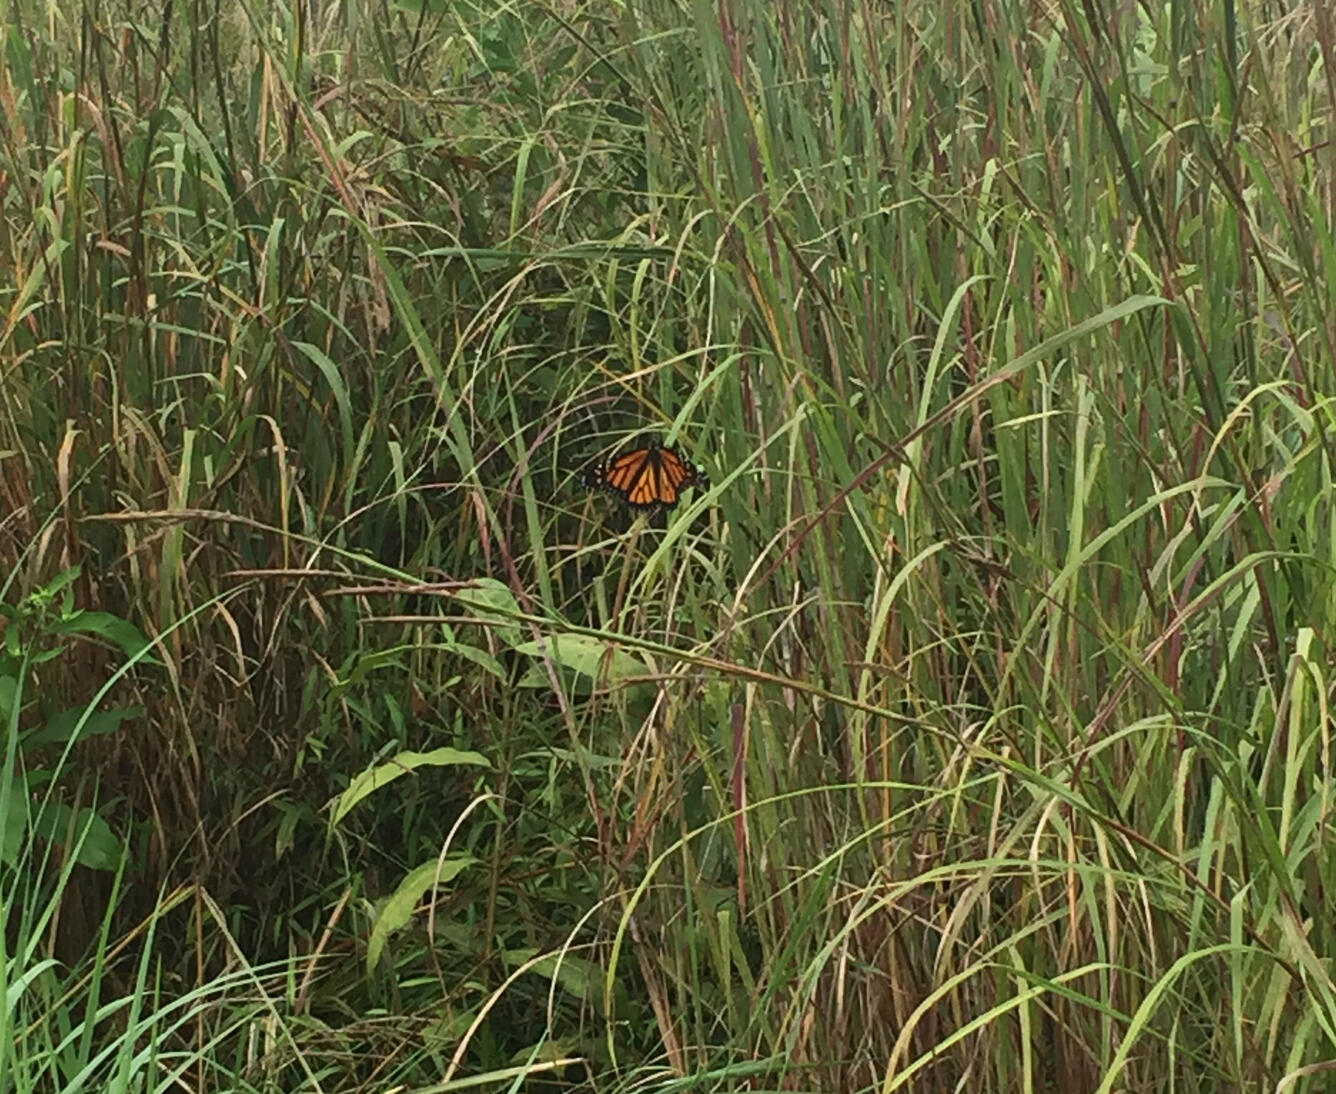 Butterfly in tall grass in Sheperdstown, WV